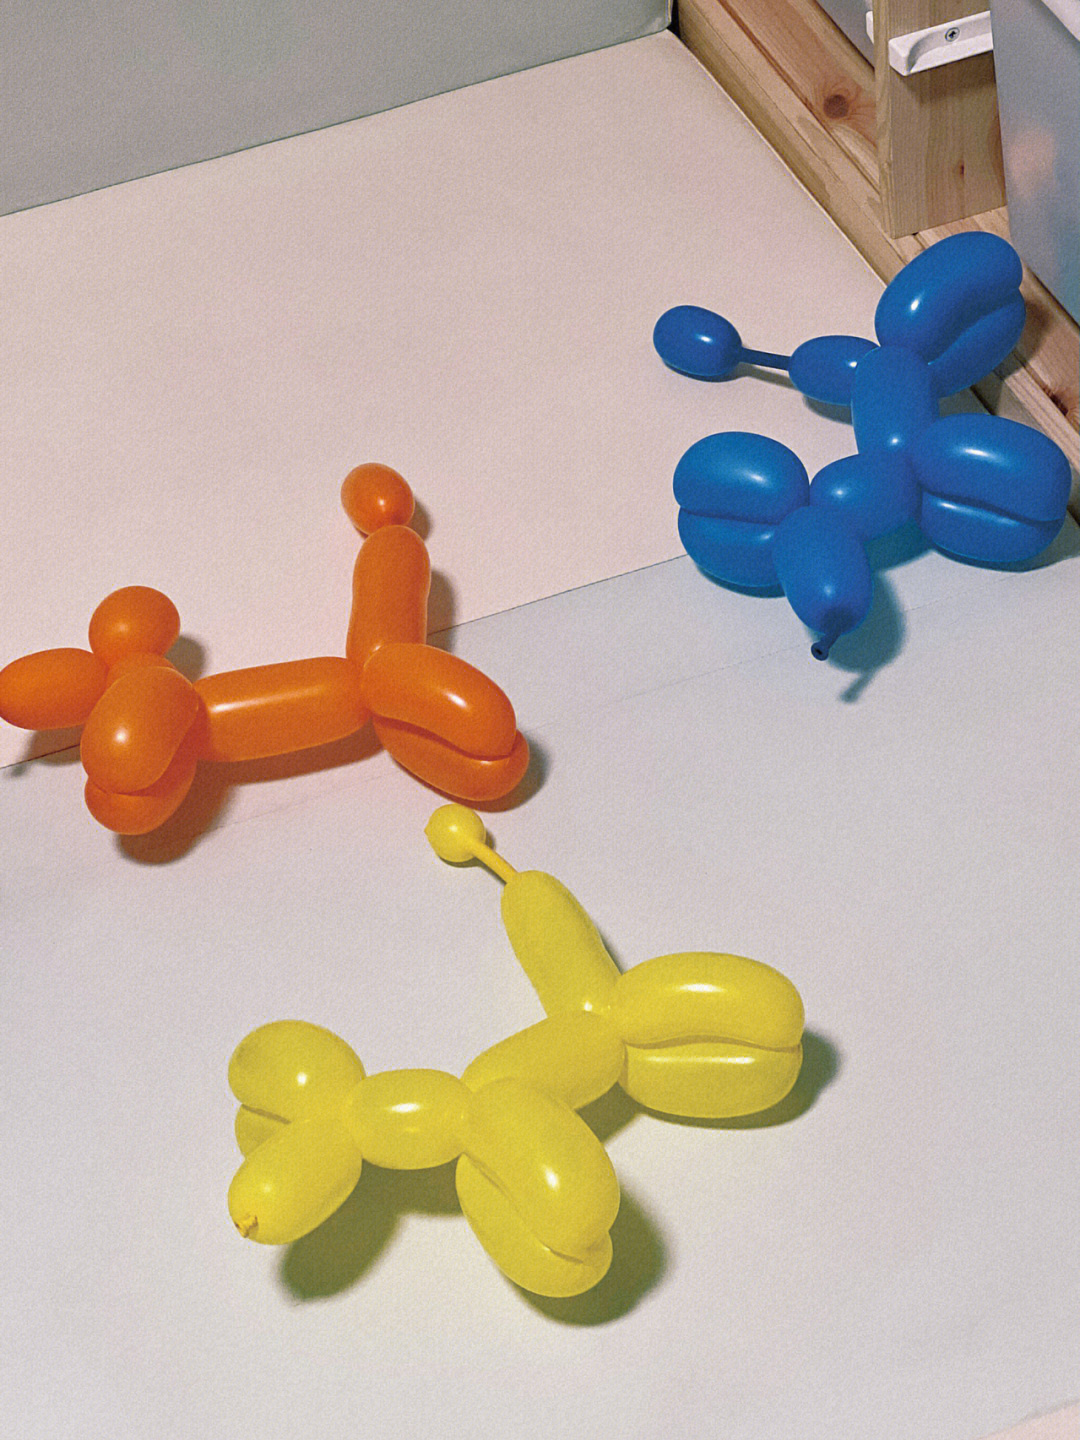 长条气球狗狗造型教程图片